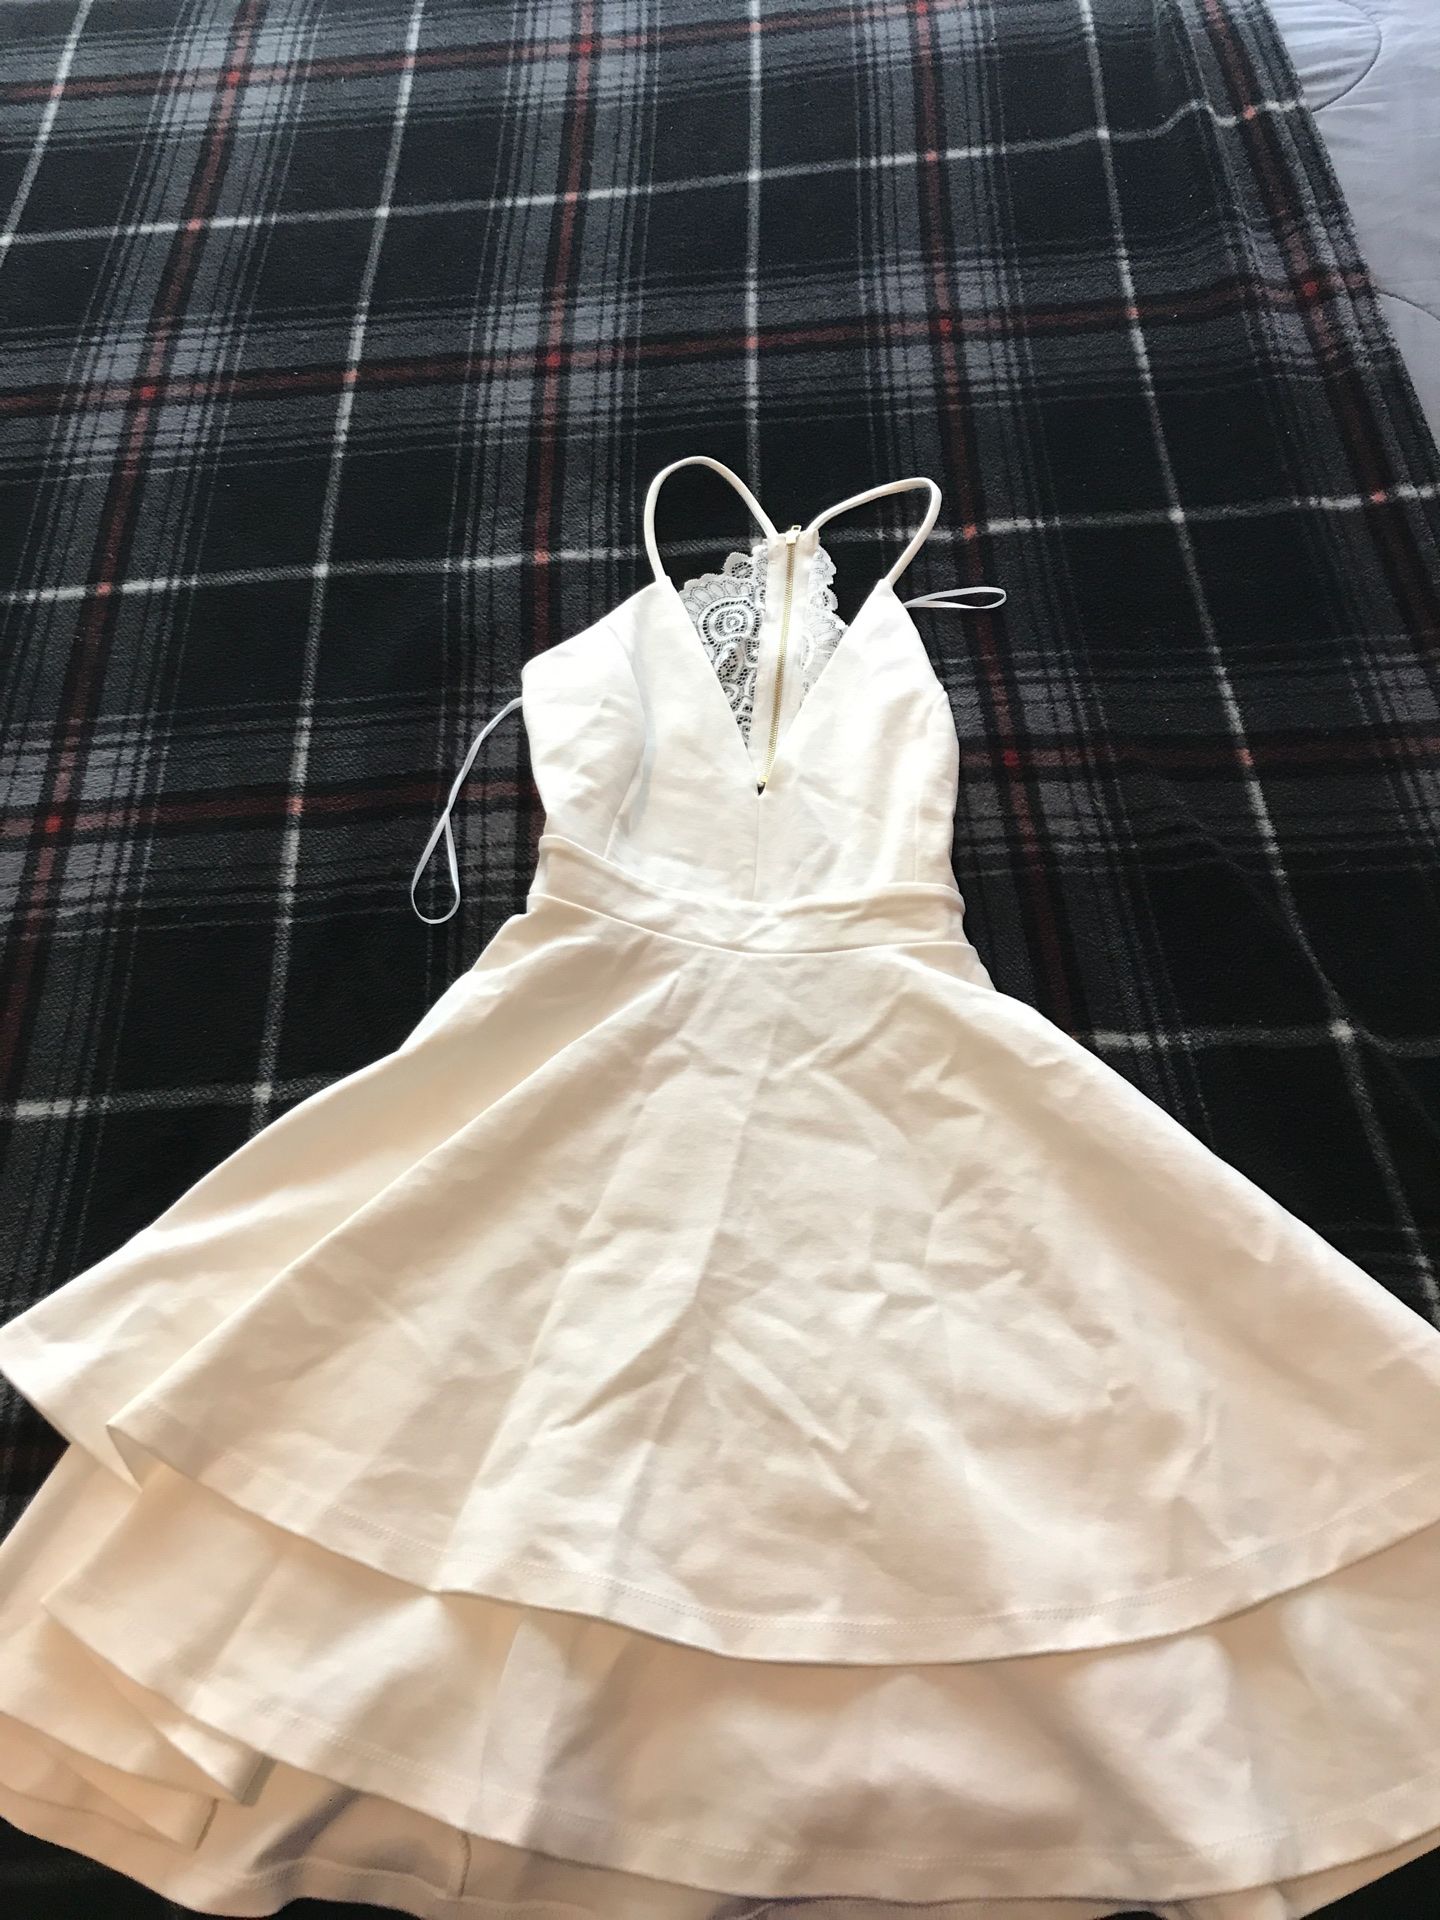 White Wisdor dress